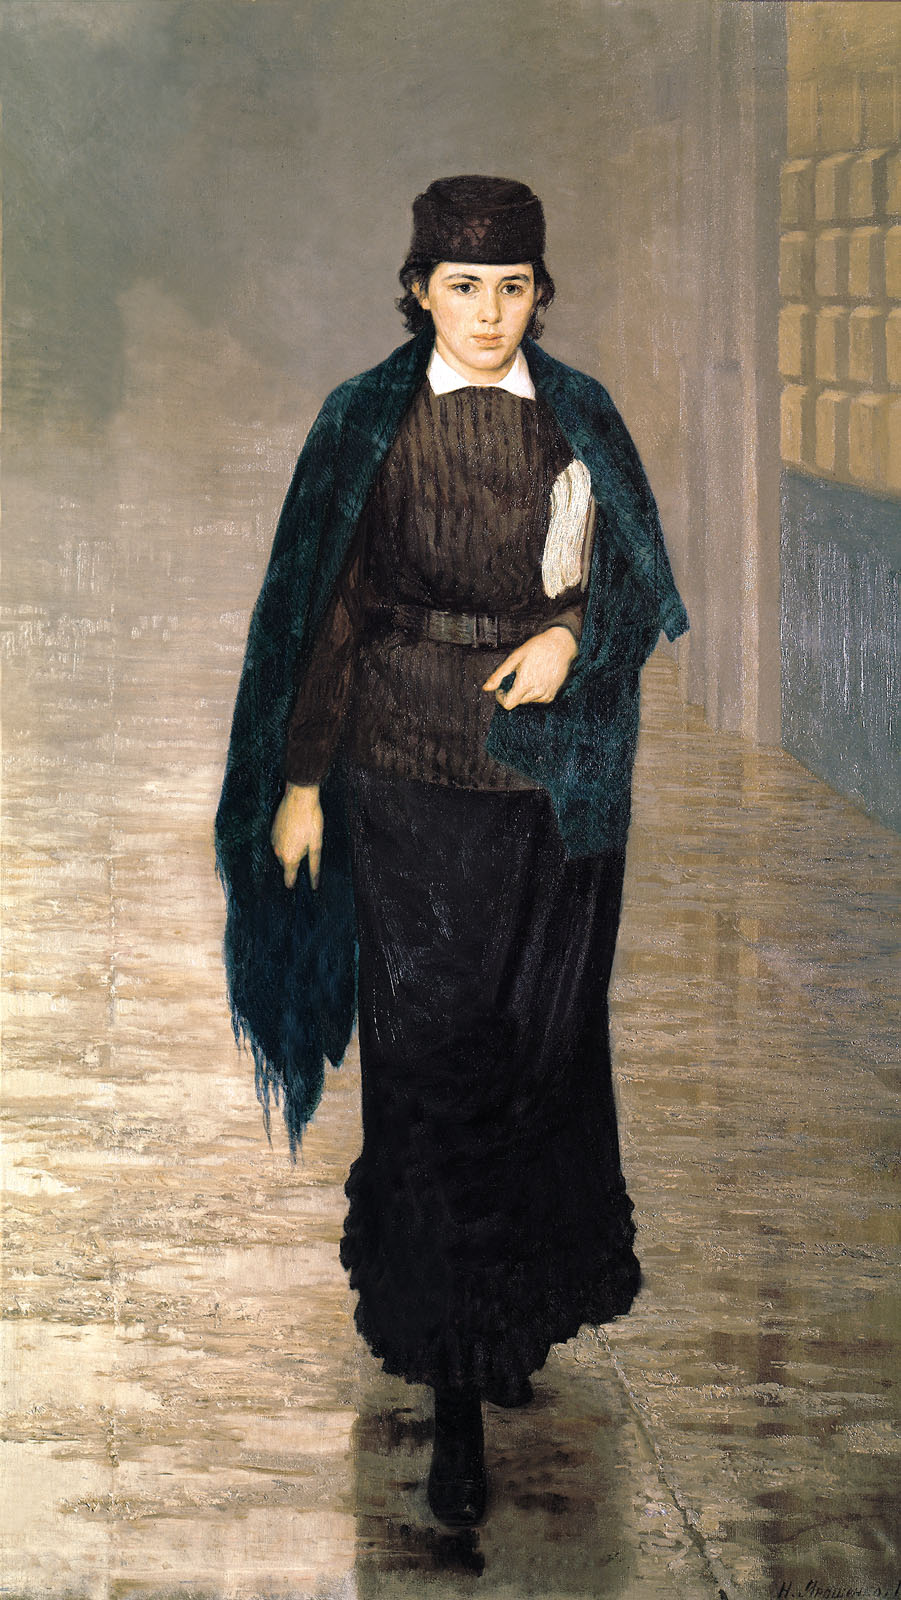 Studentka by Nikołaj Aleksandrowicz Jaroszenko - 1883 